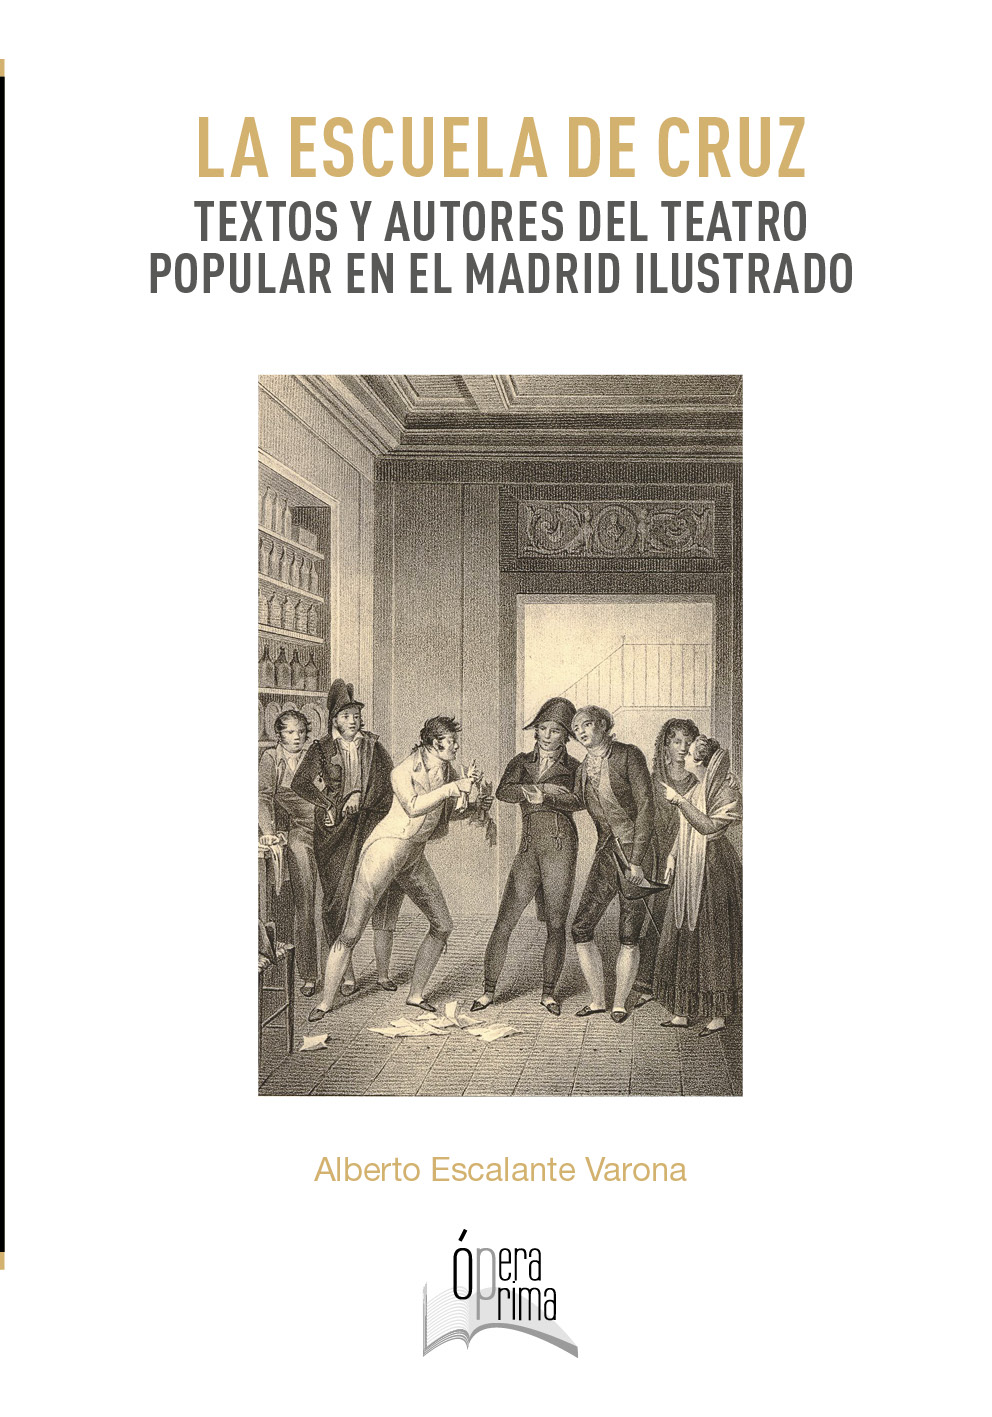 Imagen de portada del libro La Escuela de Cruz. Textos y autores del teatro popular en el Madrid ilustrado (Primer Premio Opera Prima 2019)